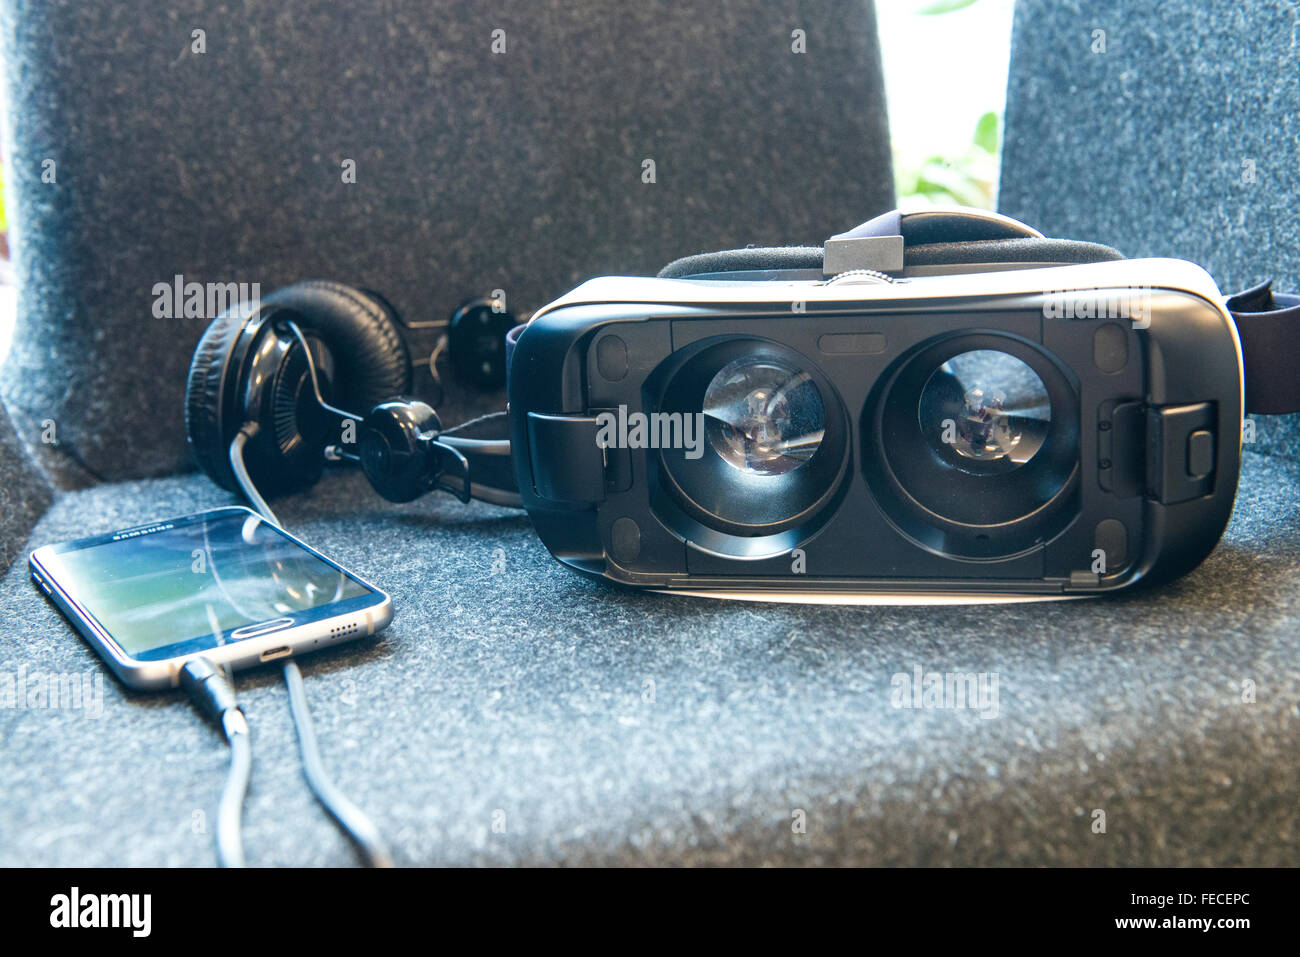 Kopenhagen, Dänemark. 5. Februar 2016. Chora ist ein Pop-up-Raum im Meatpacking District von Kopenhagen, wo die Menschen gehen und versuchen verschiedene Ebenen der virtuellen Realität. Schulen werden in der Lage zu kommen auf Exkursionen, Firmen können zu sehen, was mit VR möglich ist. VR-Enthusiasten werden in der Lage zu kommen und gemeinsam mit anderen Content-Ersteller. Ihr Ziel ist es, ein Umfeld zu schaffen, wo Ideen über virtuelle Realität und Come to Life. Bild ist das Oculus GEAR VR Kopfhörer angeschlossen an ein Samsung Galaxy Smartphone. Bildnachweis: Matthew James Harrison/Alamy Live-Nachrichten Stockfoto